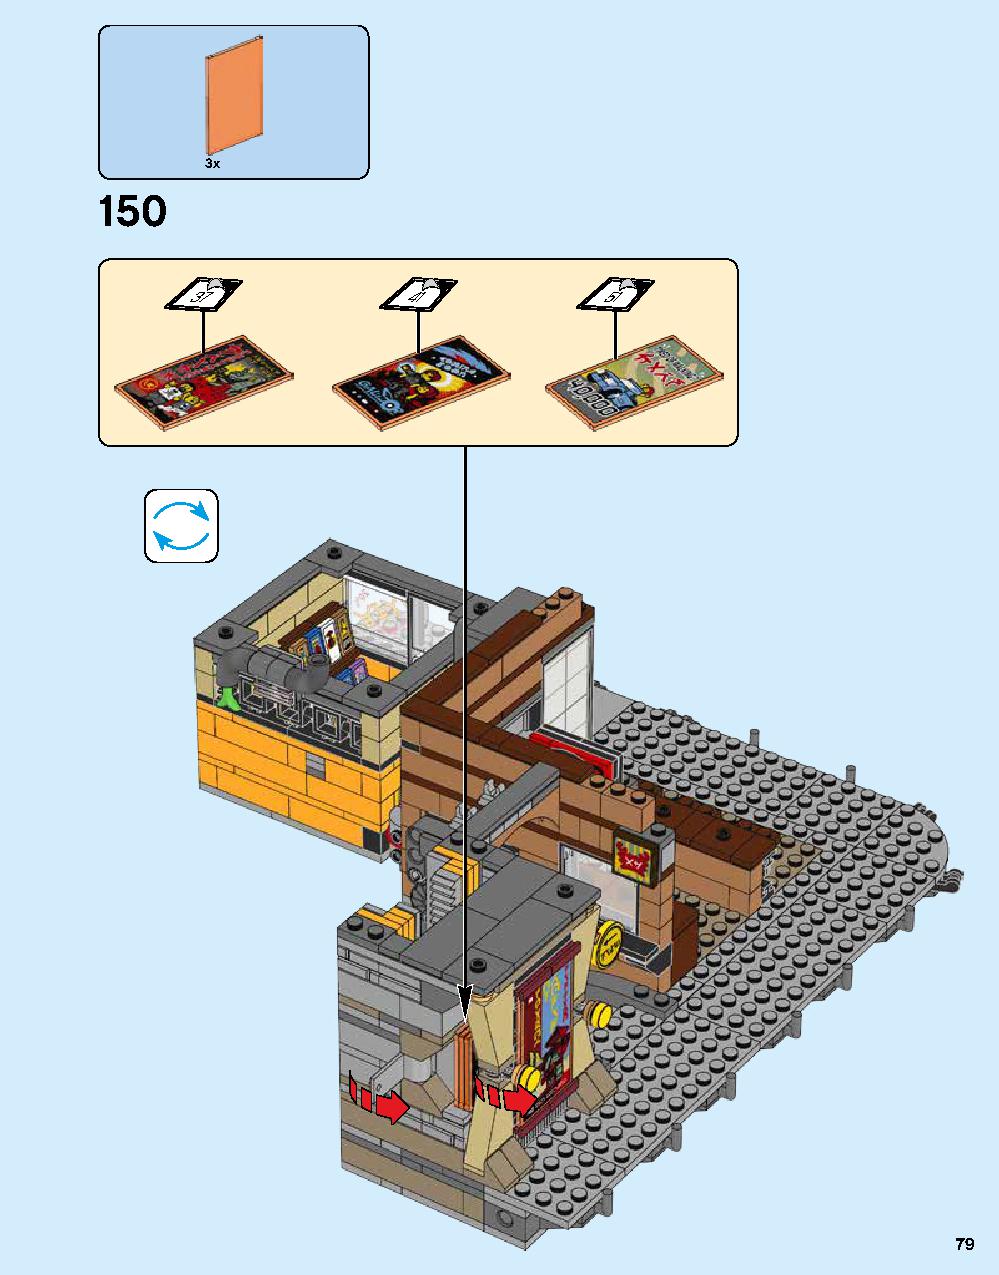 ニンジャゴー シティ 70620 レゴの商品情報 レゴの説明書・組立方法 79 page